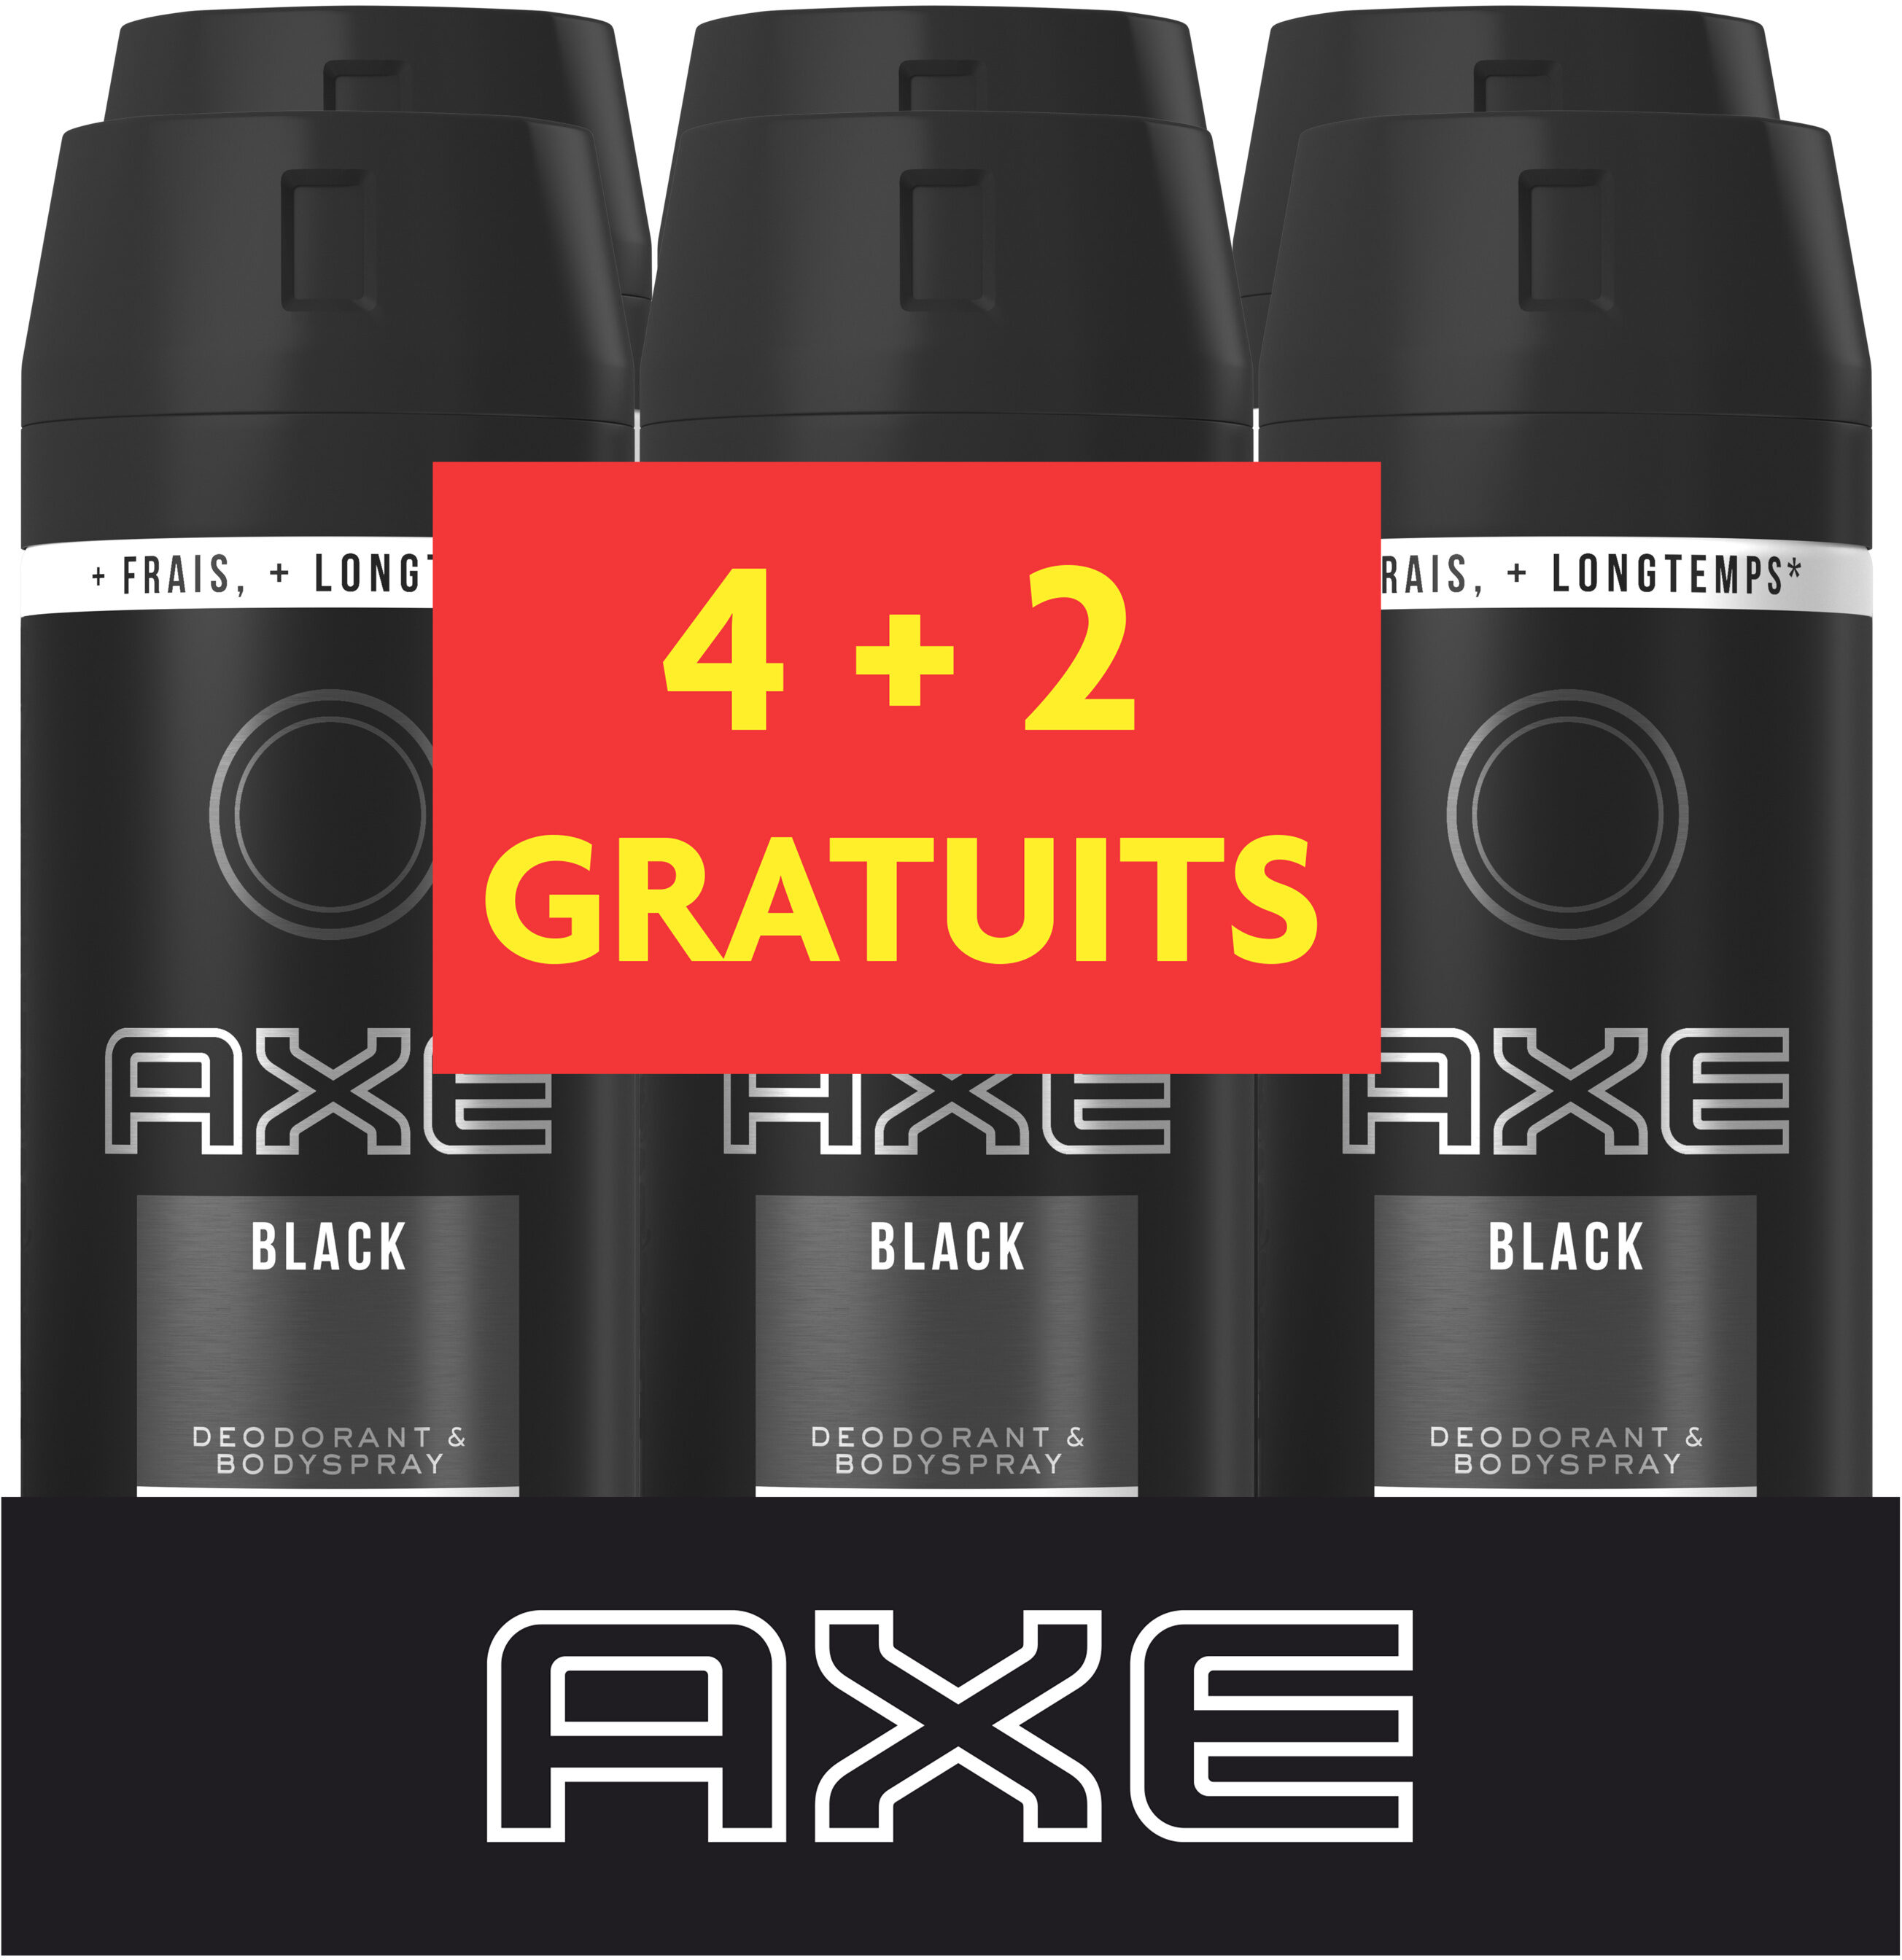 AXE Déodorant Homme Spray Anti Transpirant Black 150ml Lot de 6 - Produit - fr